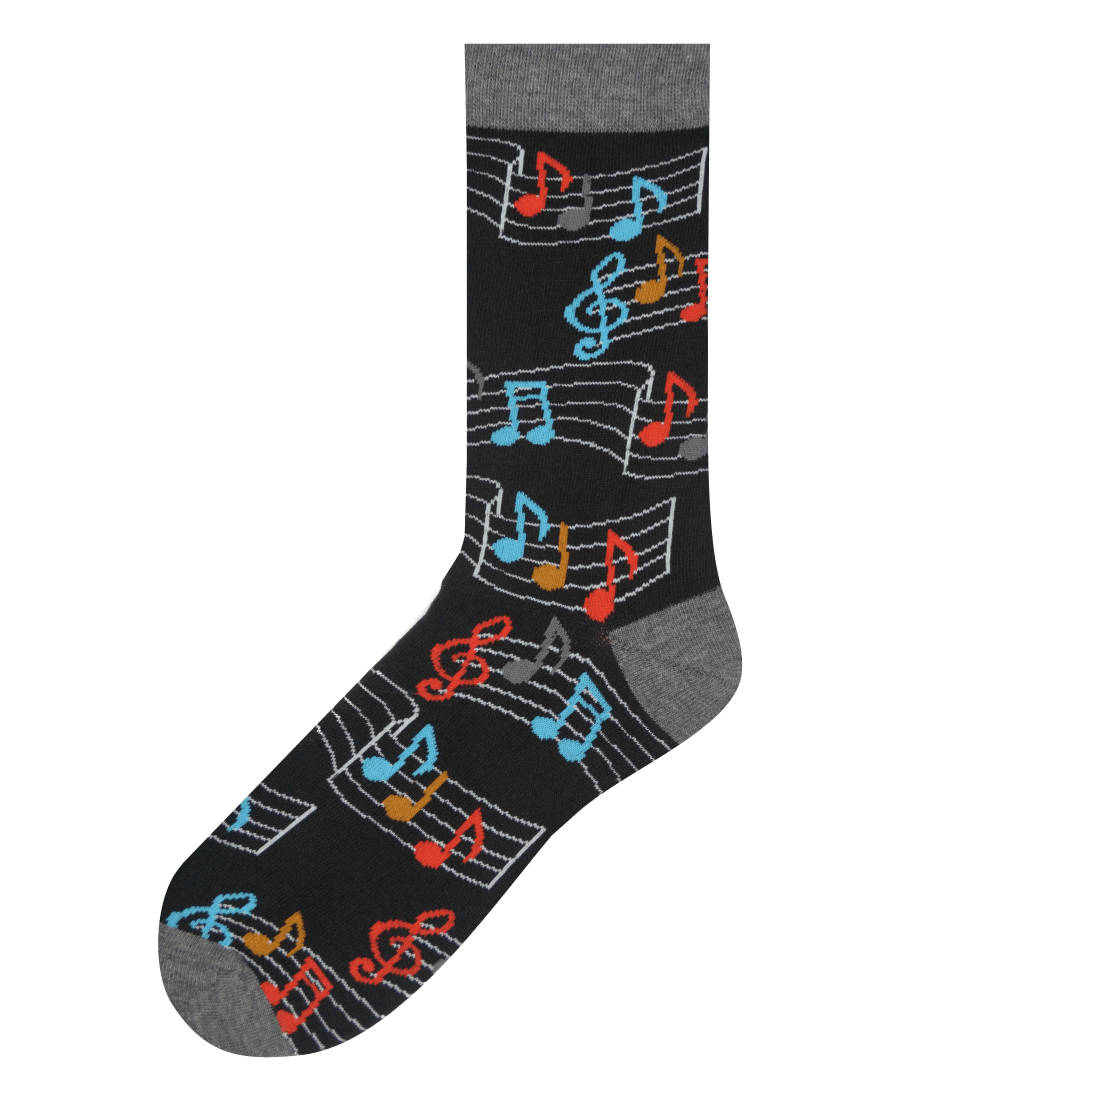 Medias Locas calcetines divertidos de diseño desigual musica Freaky Socks. Medias disparejas